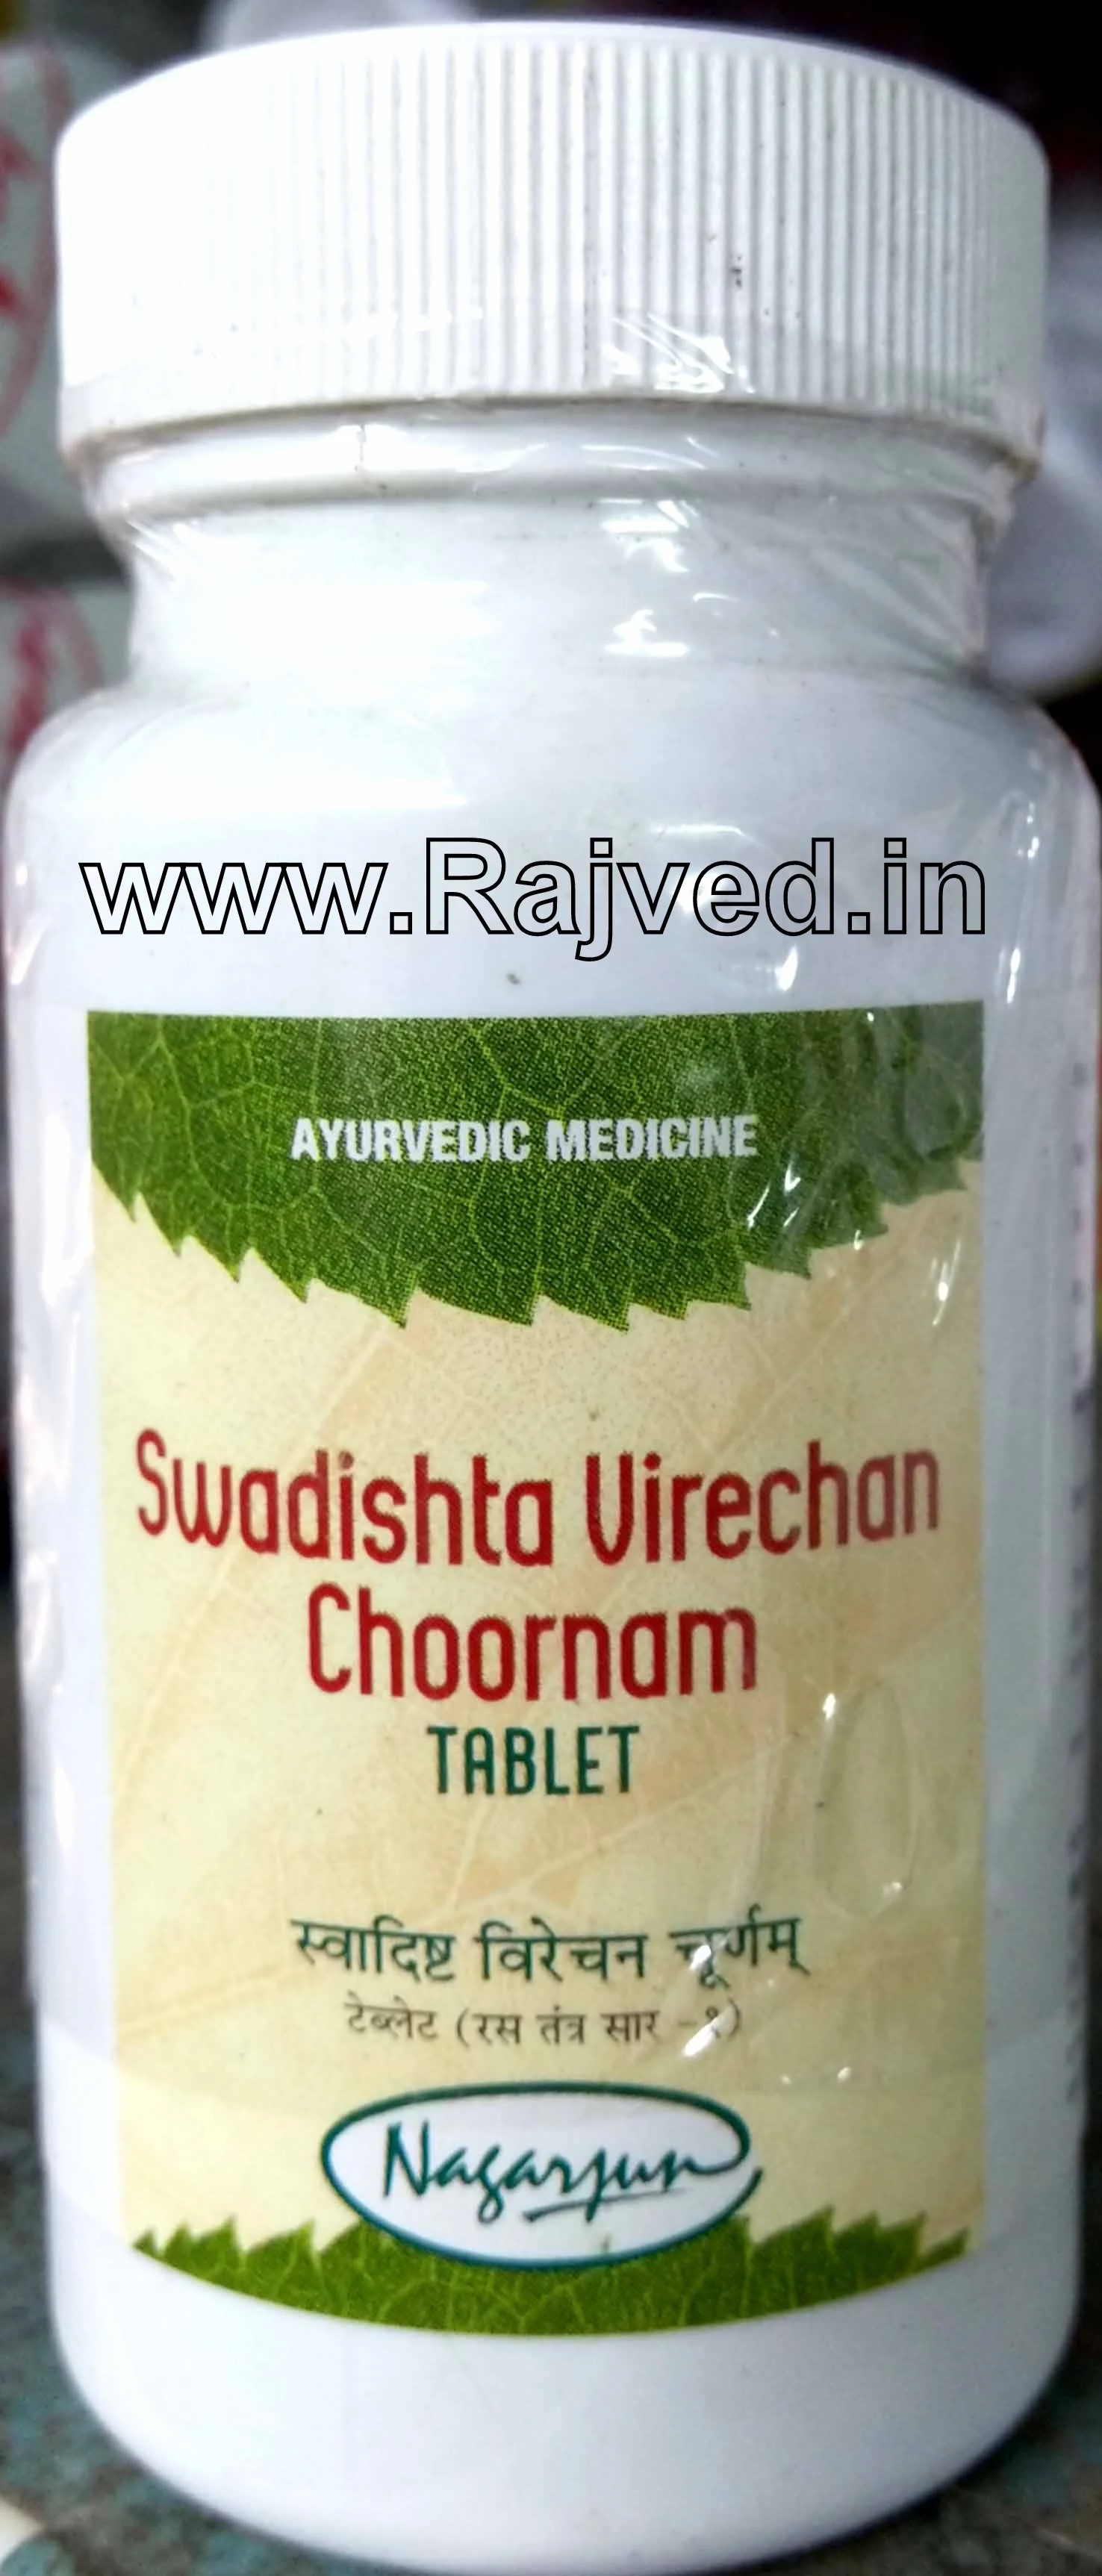 swadishta virechan tablet 500 gm upto 20% off free shipping nagarjun pharma gujarat